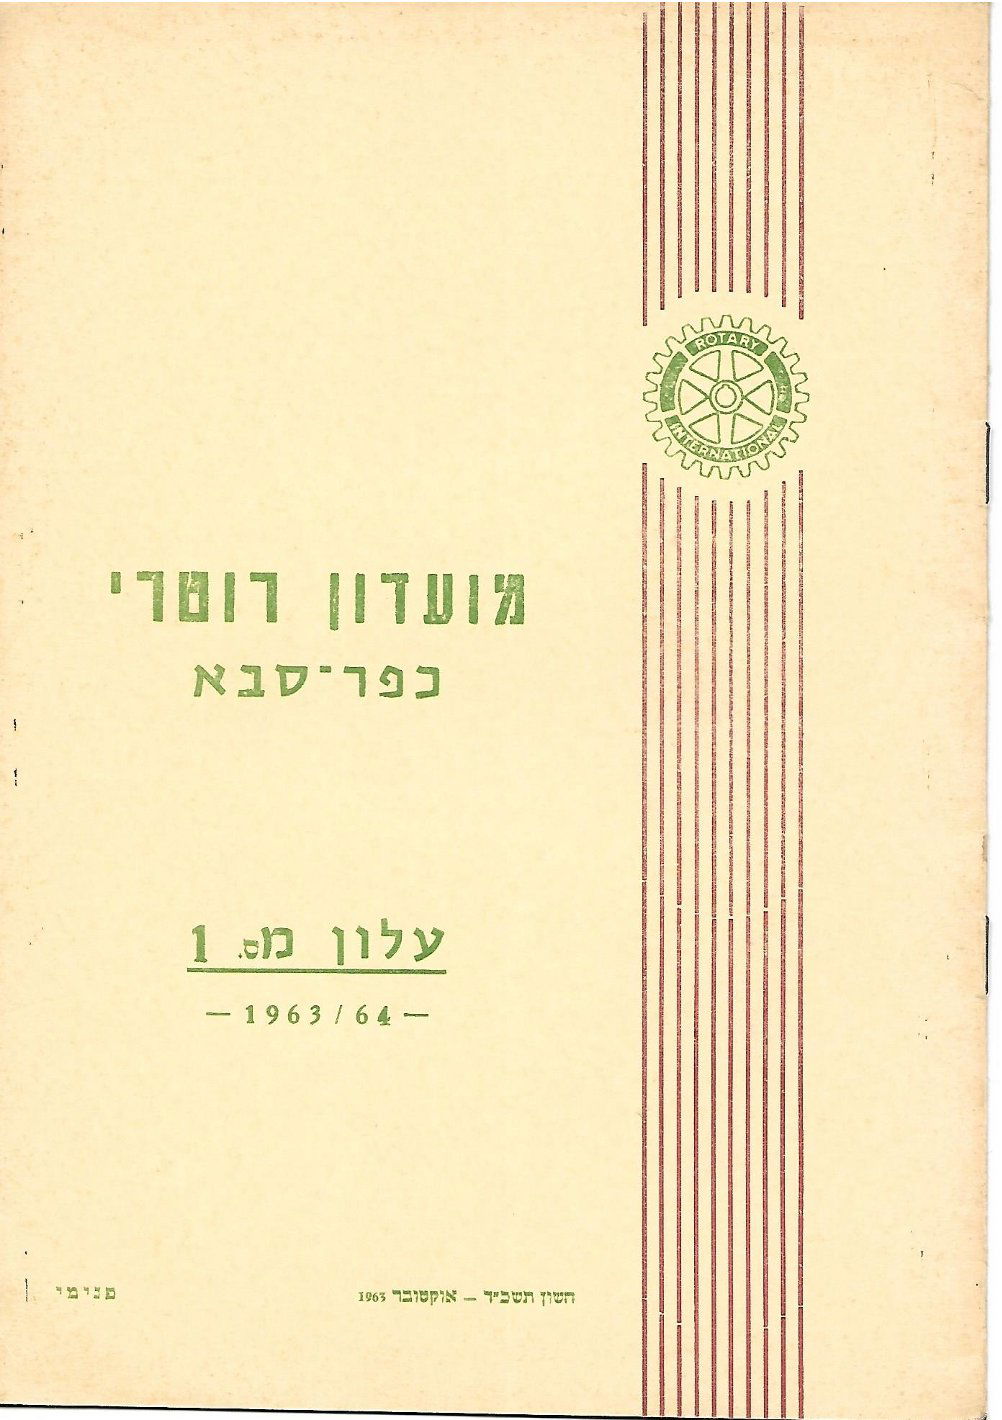 עלון מס' 1 שנת 1963/64 - נשיא מרדכי אלקלעי